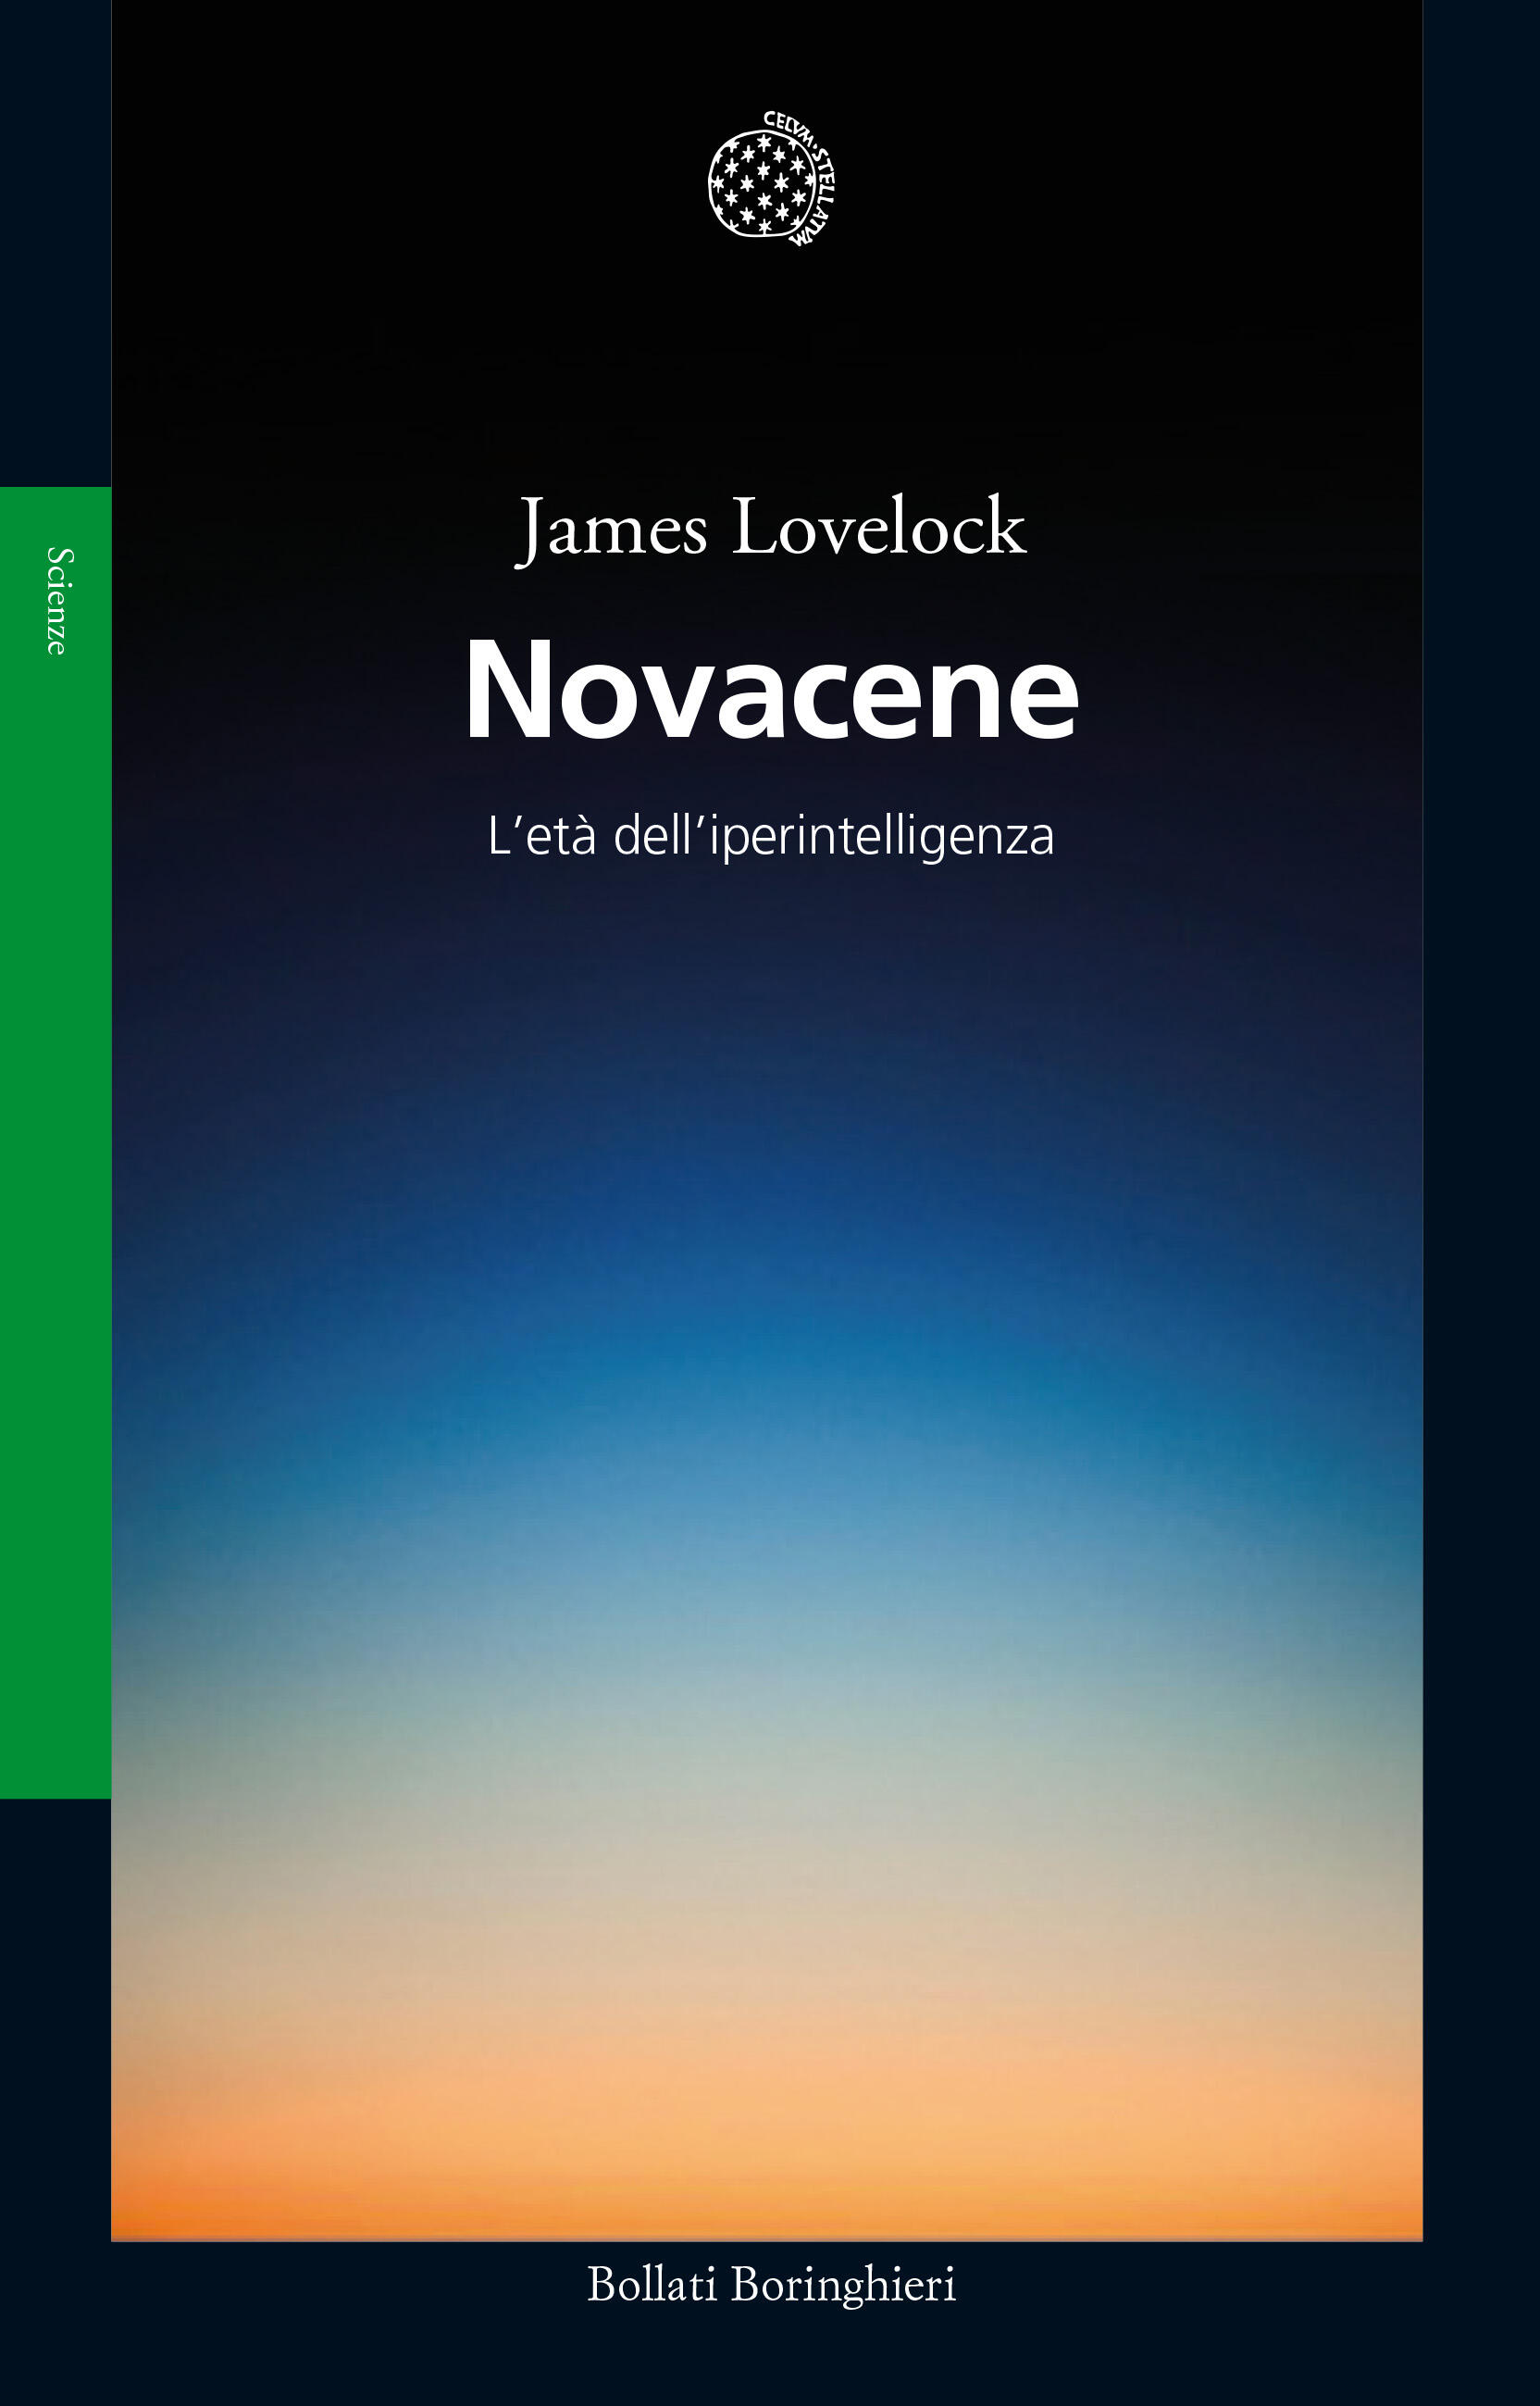 James Lovelock: Novacene (Paperback, Bollati Boringhieri)